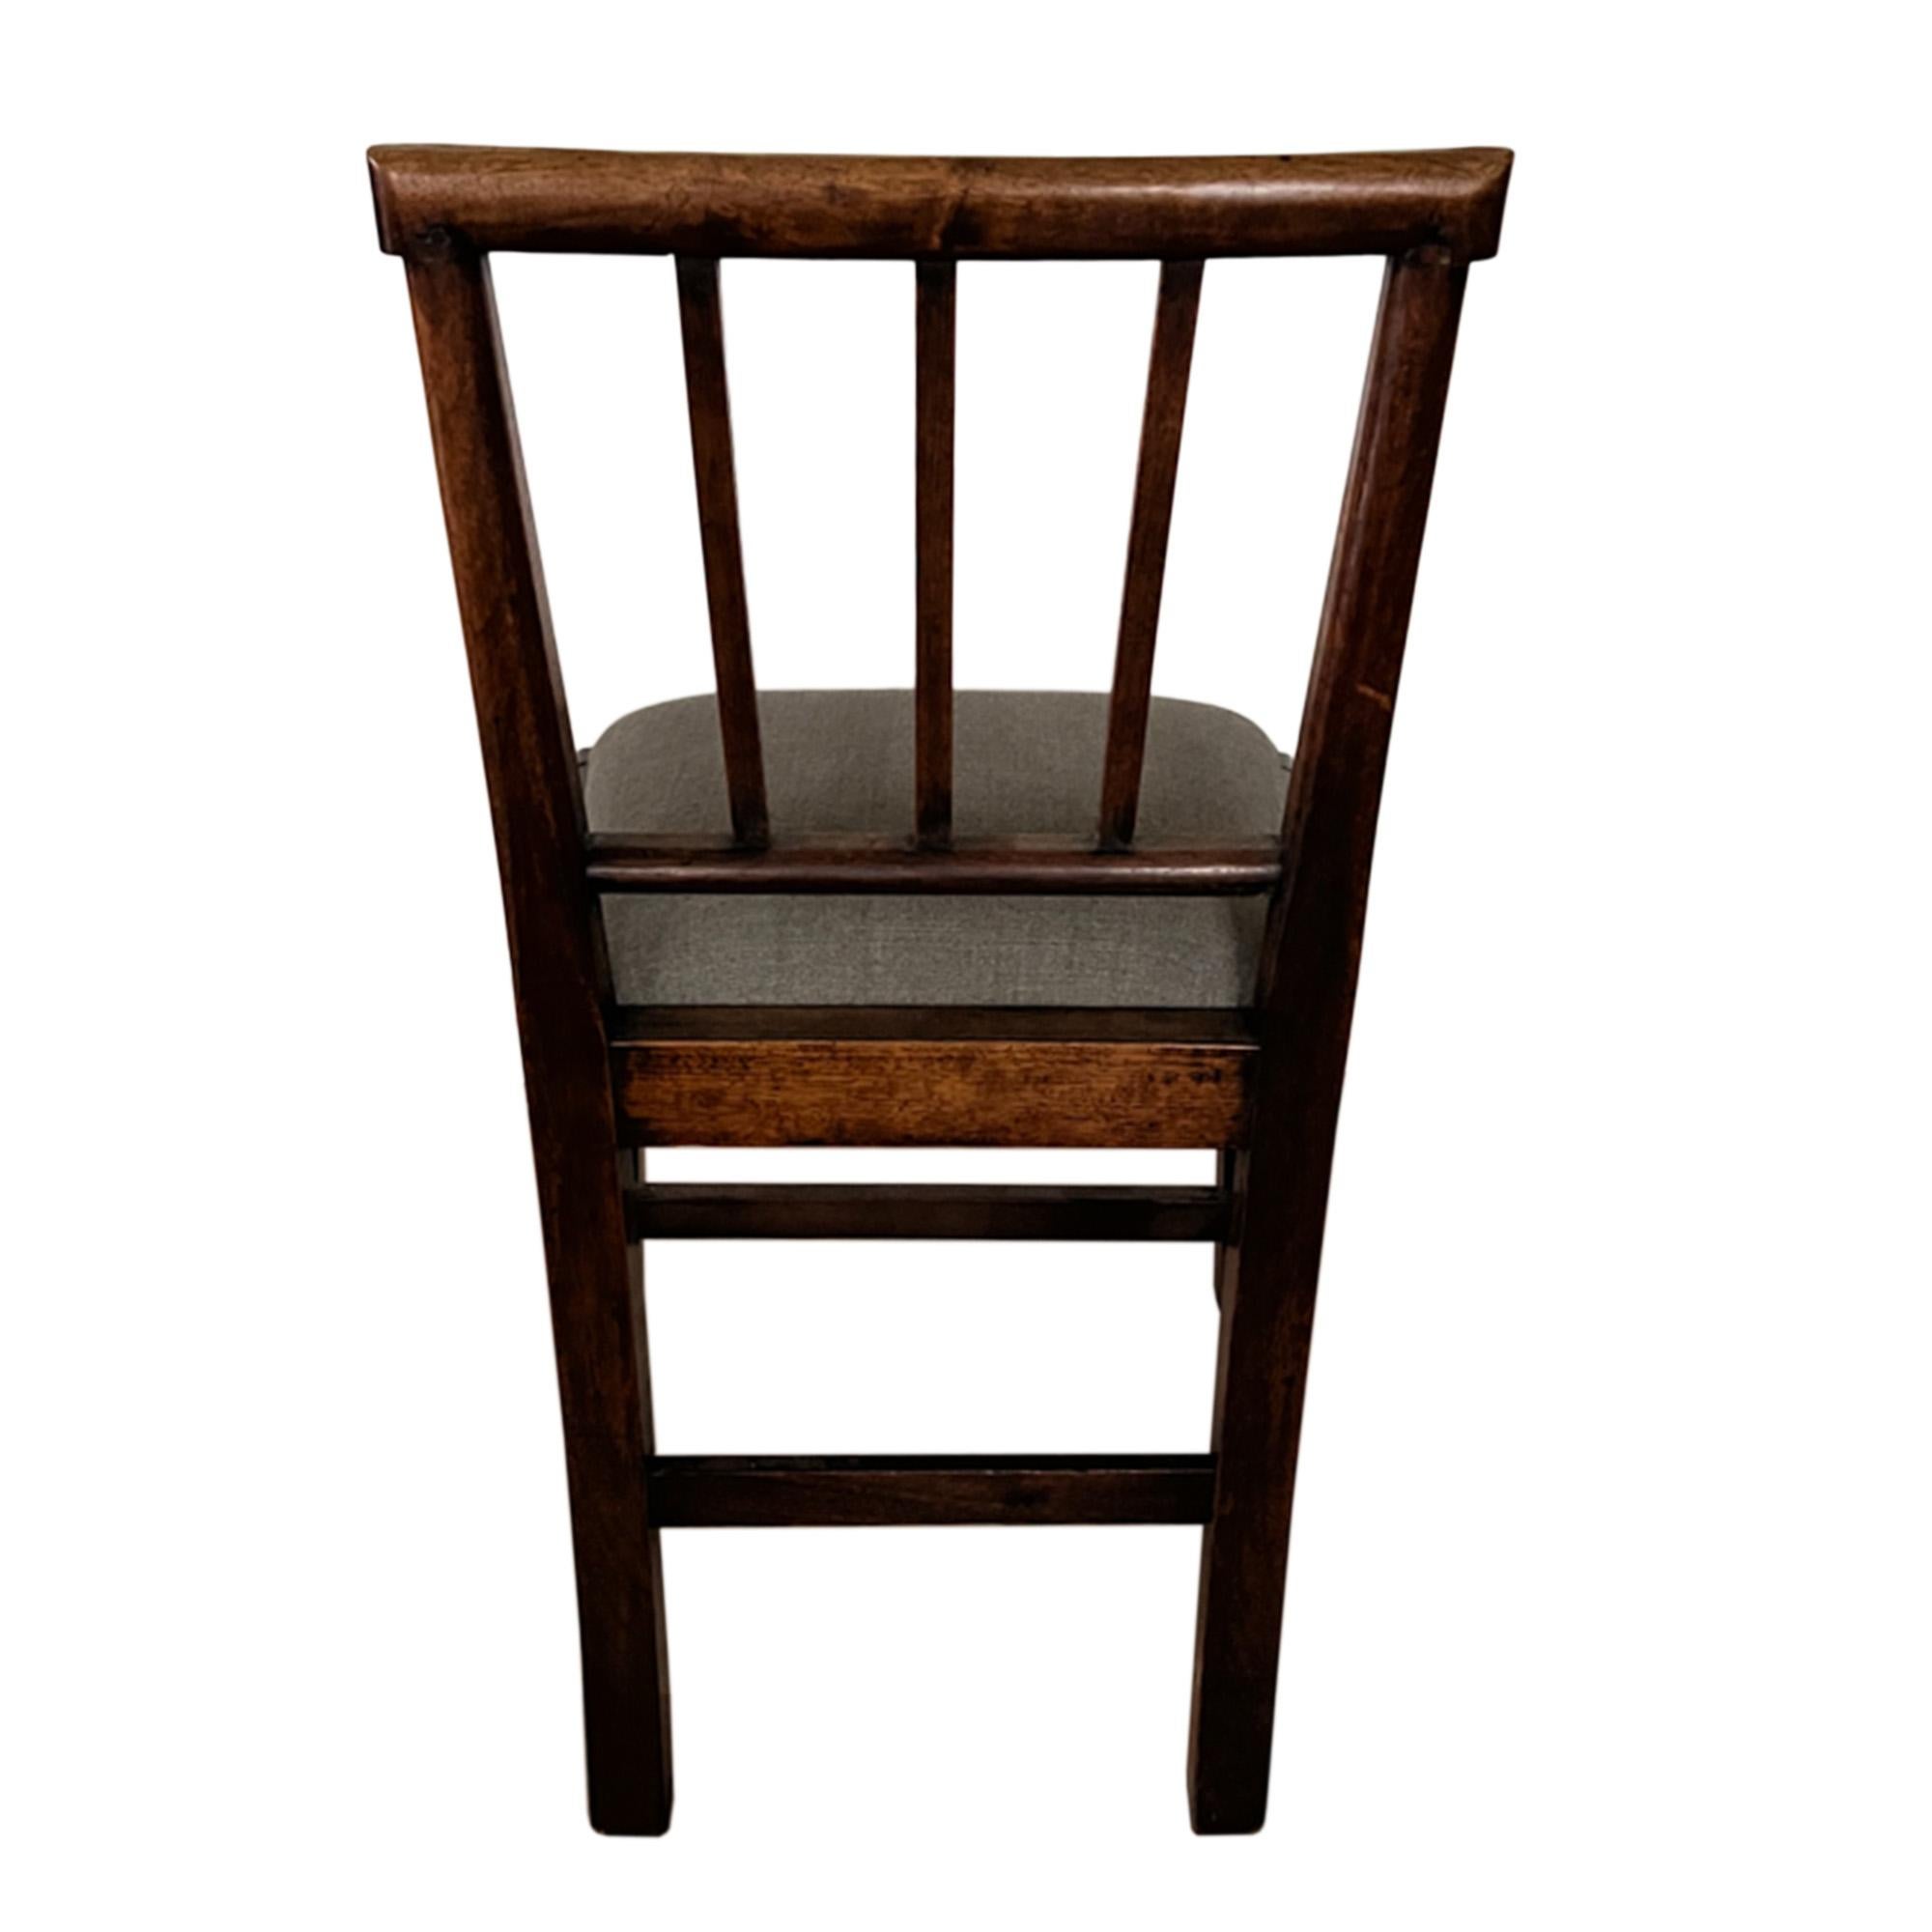 British Pair of Upholstered English Mahogany 18th Century Chairs